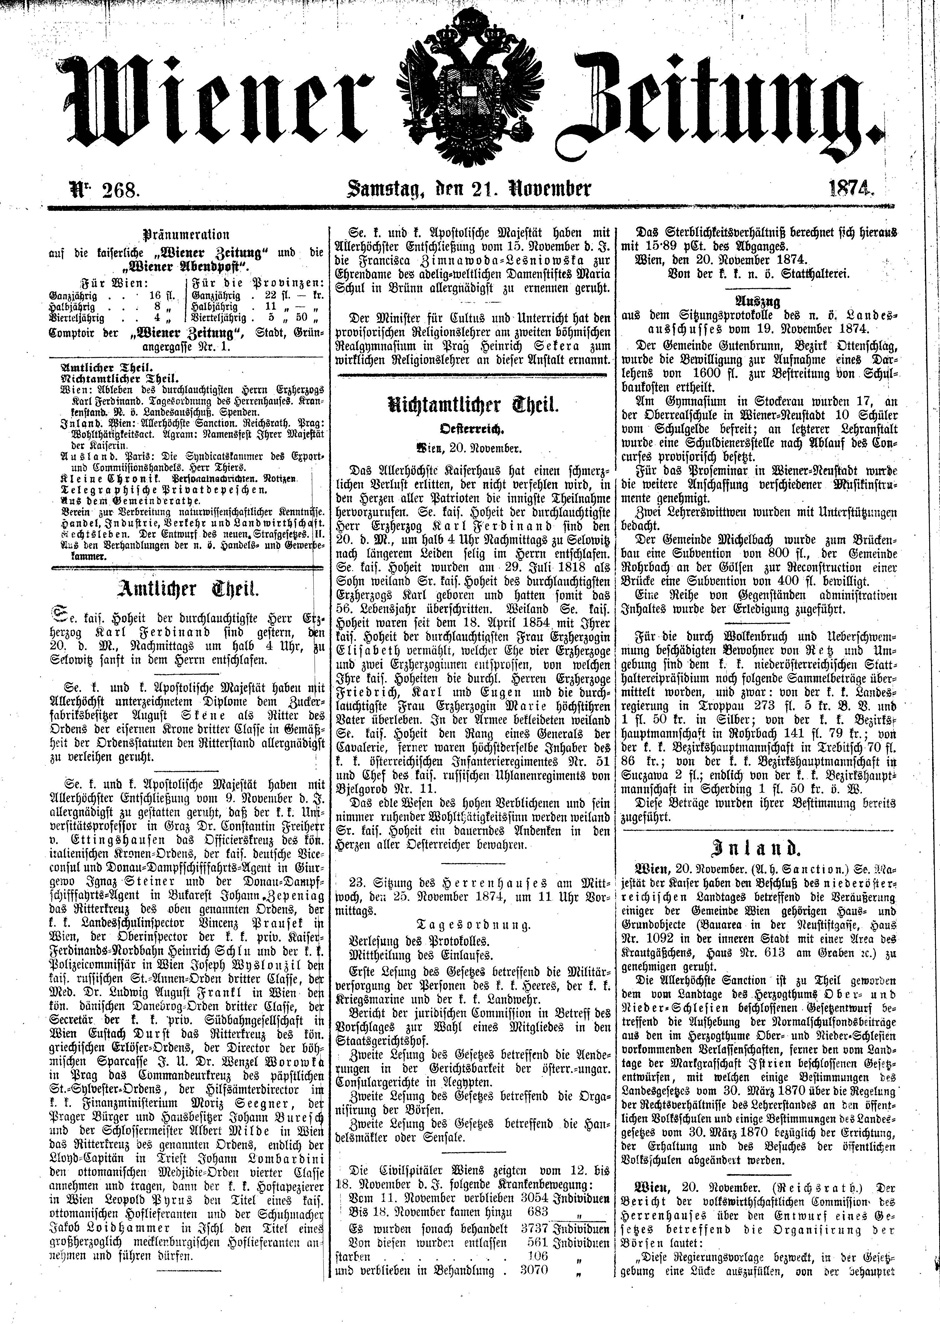 Archivbild: Wiener Zeitung, Samstag, den 21. November 1874